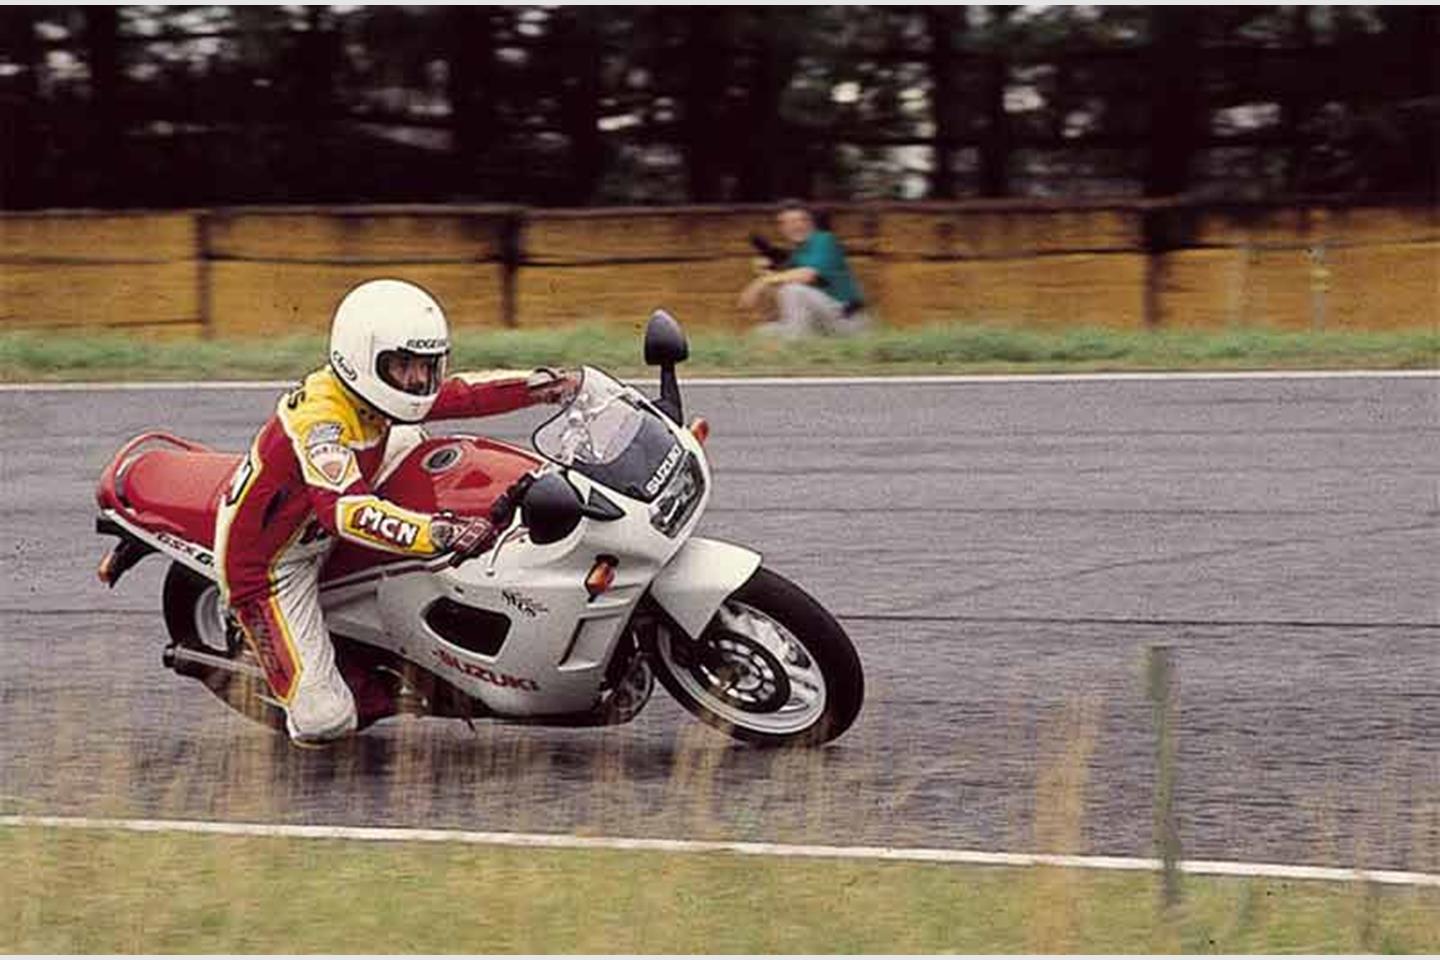 24625円 価格交渉OK送料無料 ウインカー 2002年鈴木GSX600FカタナストリートオートバイK S 25-3166 Turn Signals For 2002 Suzuki GSX600F Katana Street Motorcycle KS